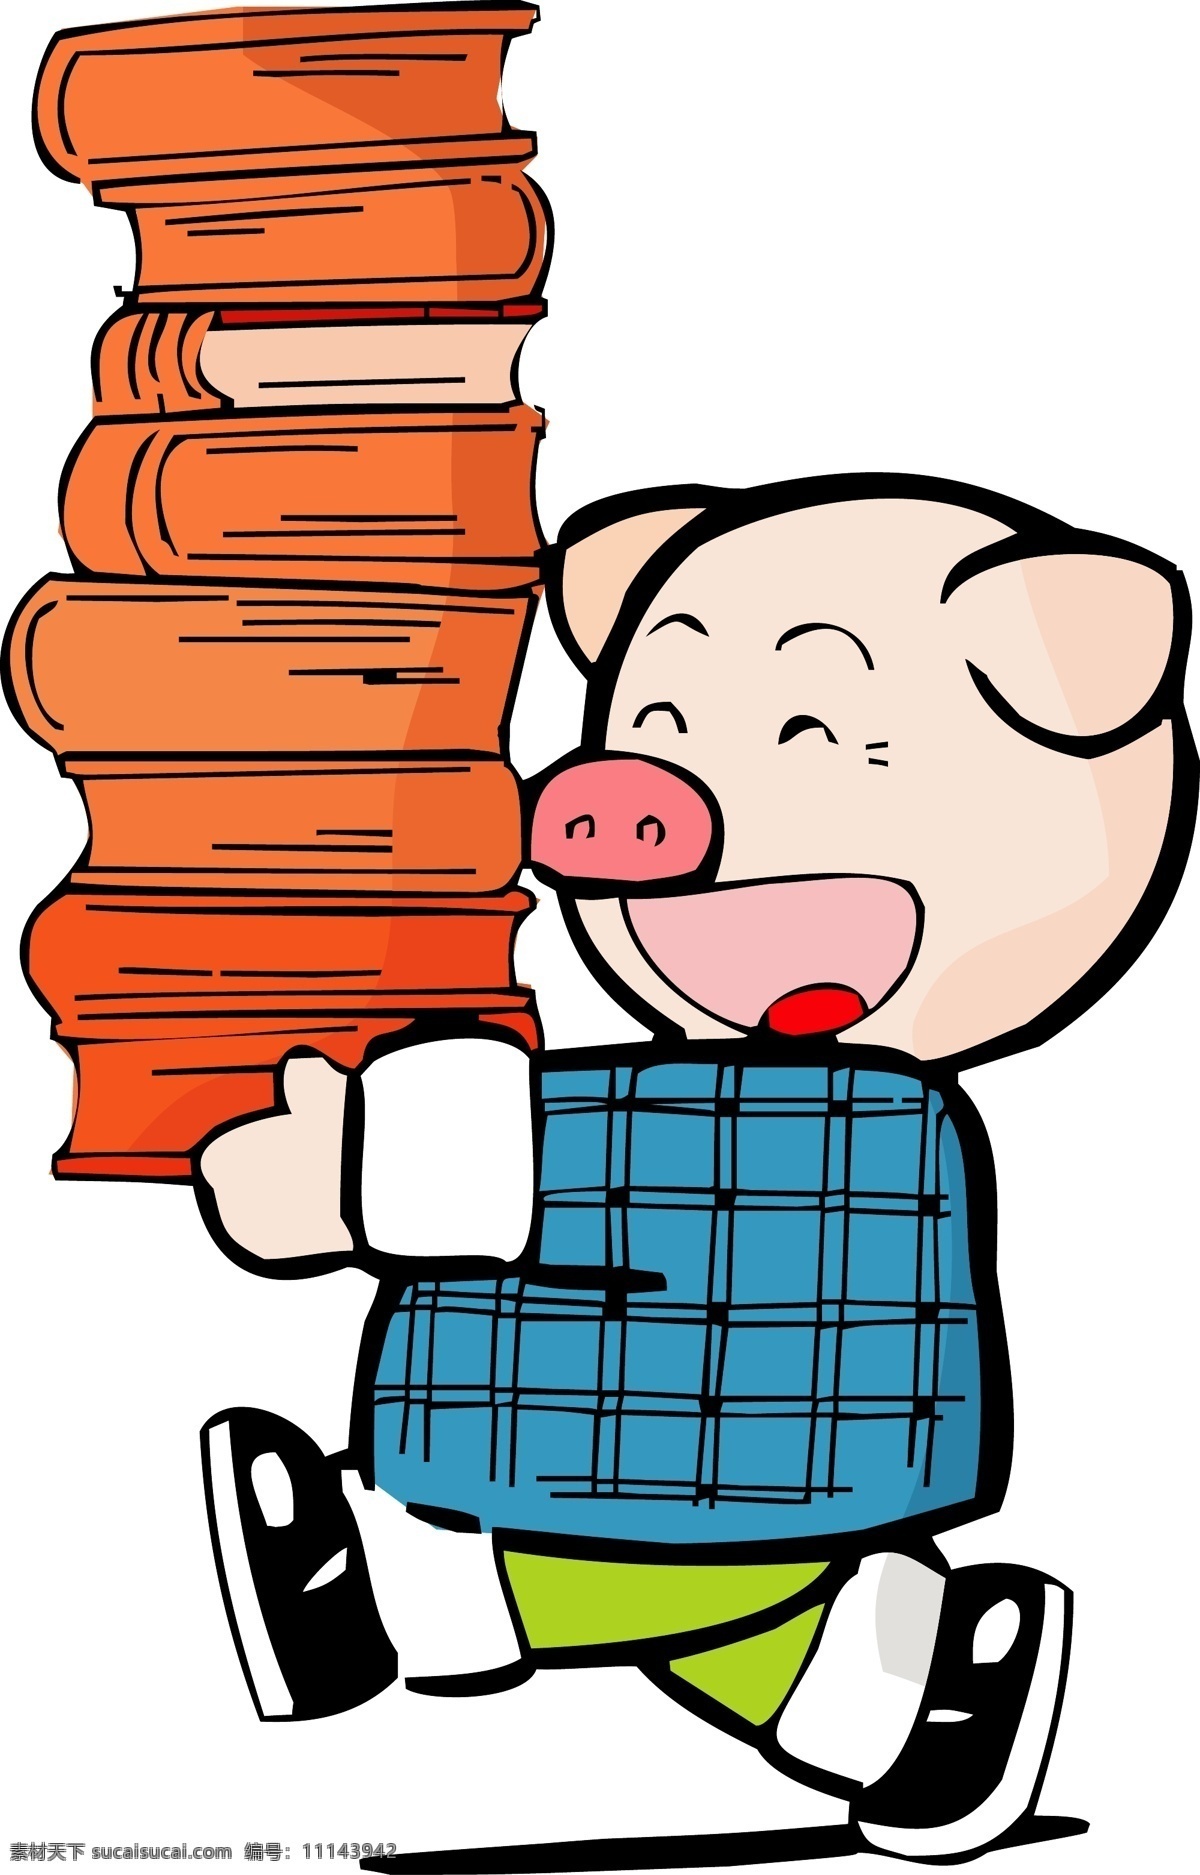 卡通 生肖 猪年 可爱 小 猪 读书 矢量图 标签cdr 卡通cdr 卡通素材 女孩卡通图 男孩卡通图 其他矢量图